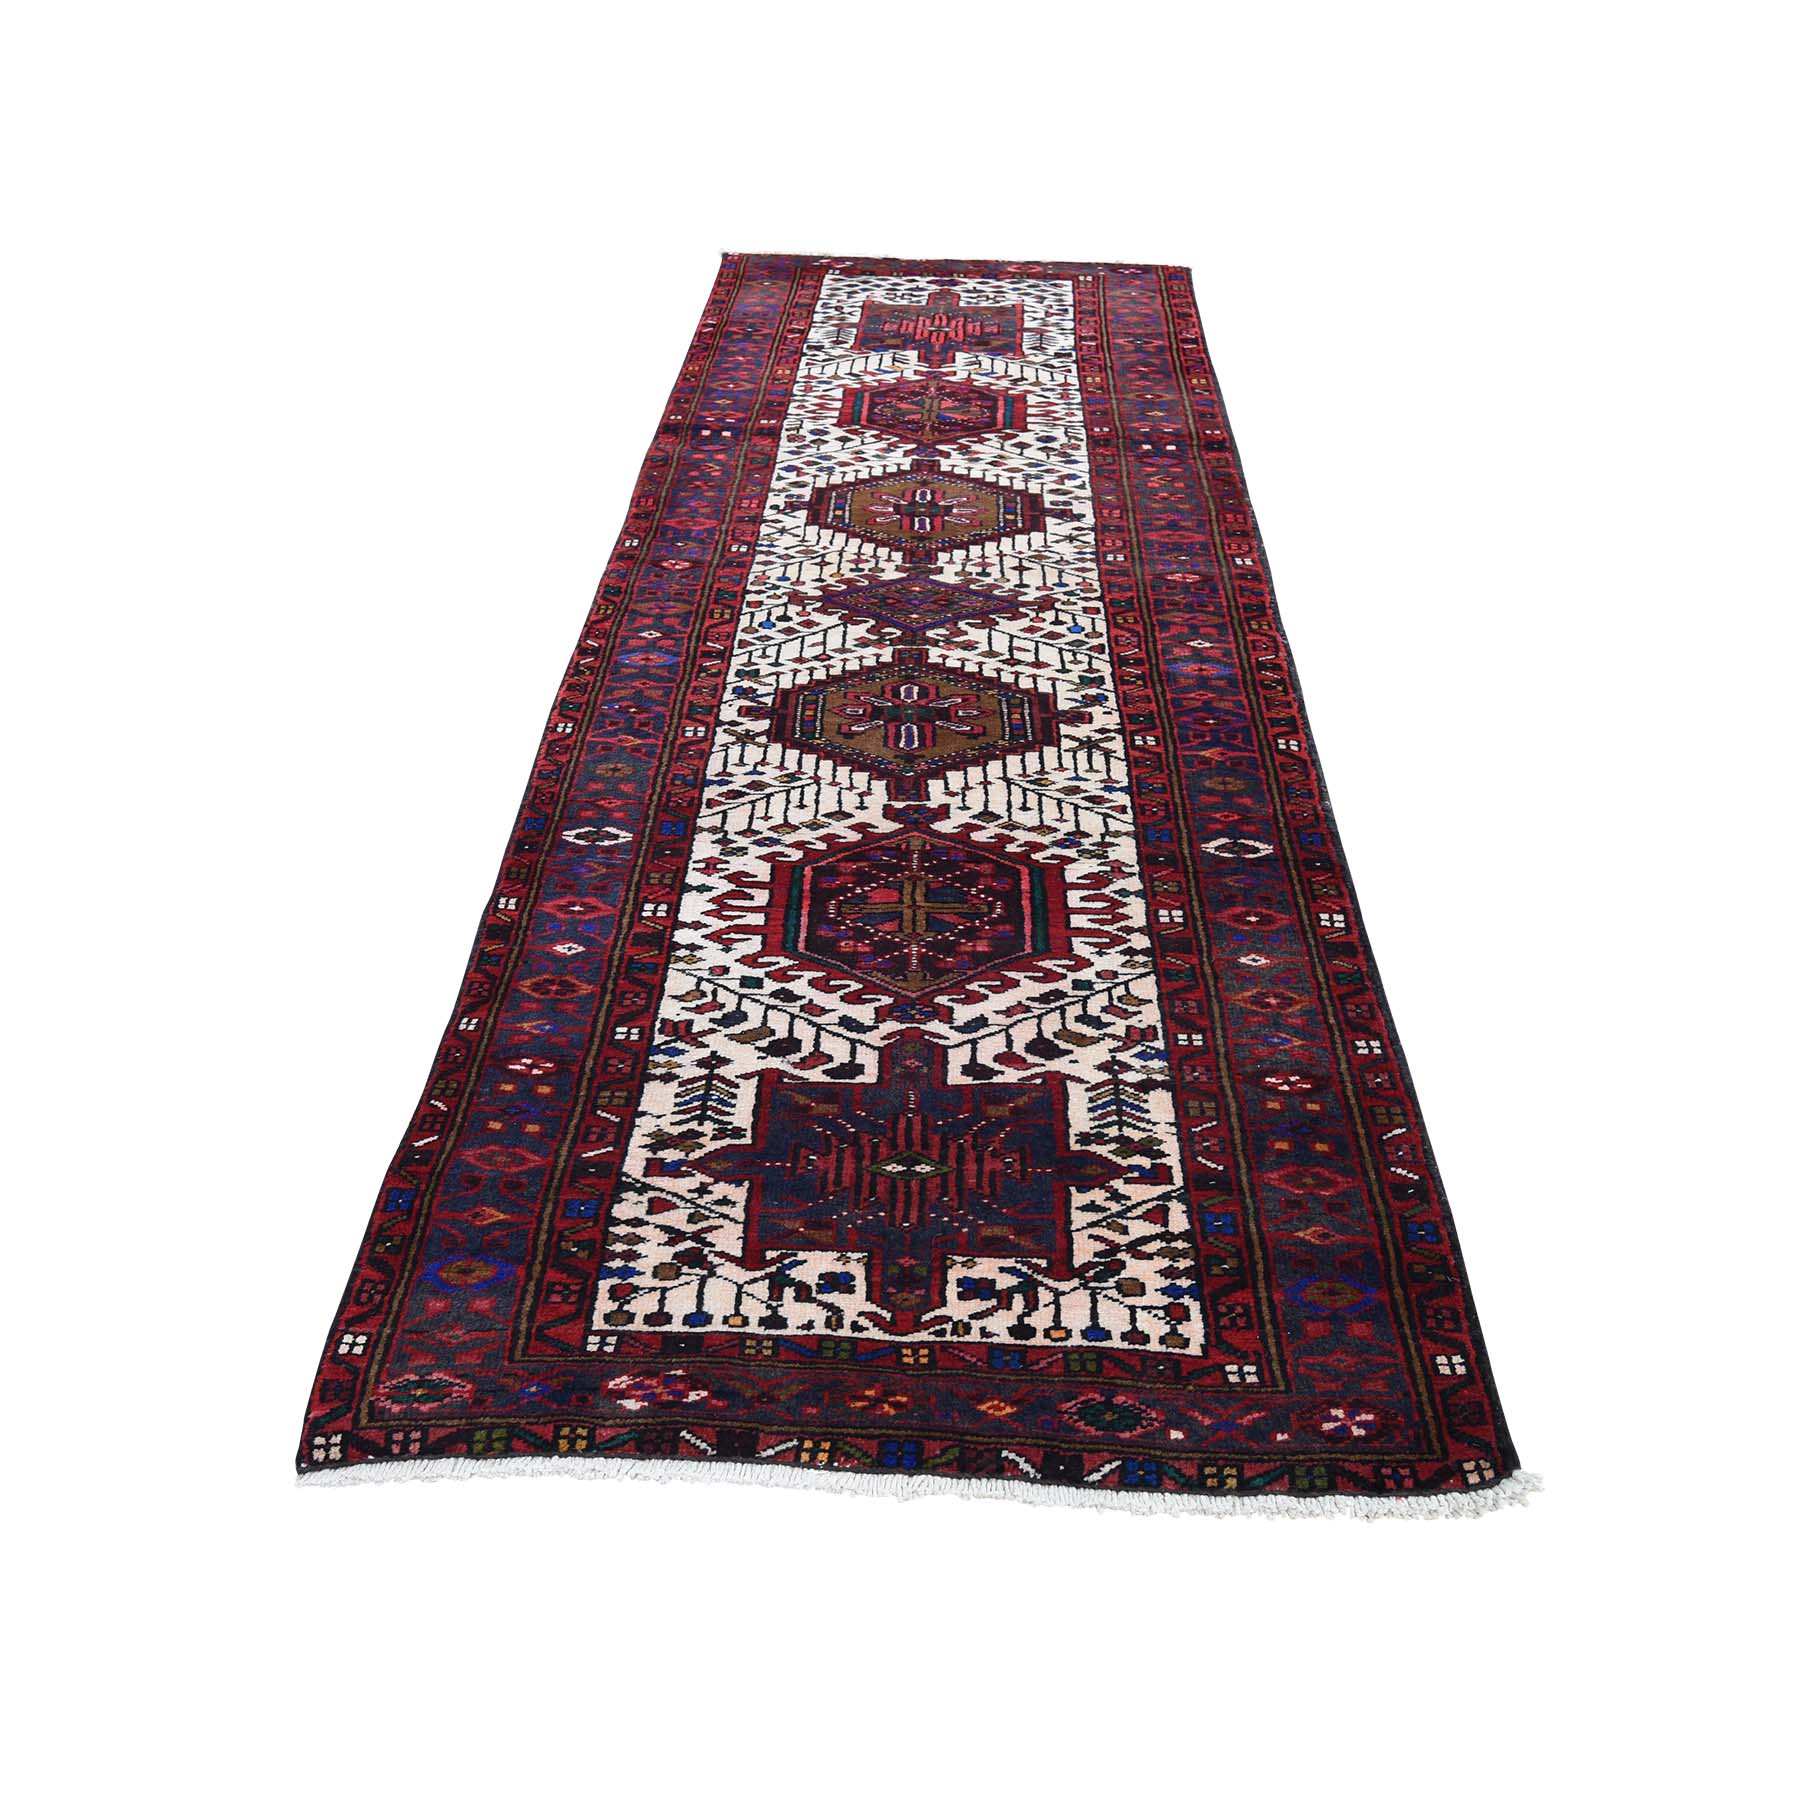 3'2"x10'5" Vintage Persian karajeh Pure Wool Runner Hand Woven Oriental Rug 